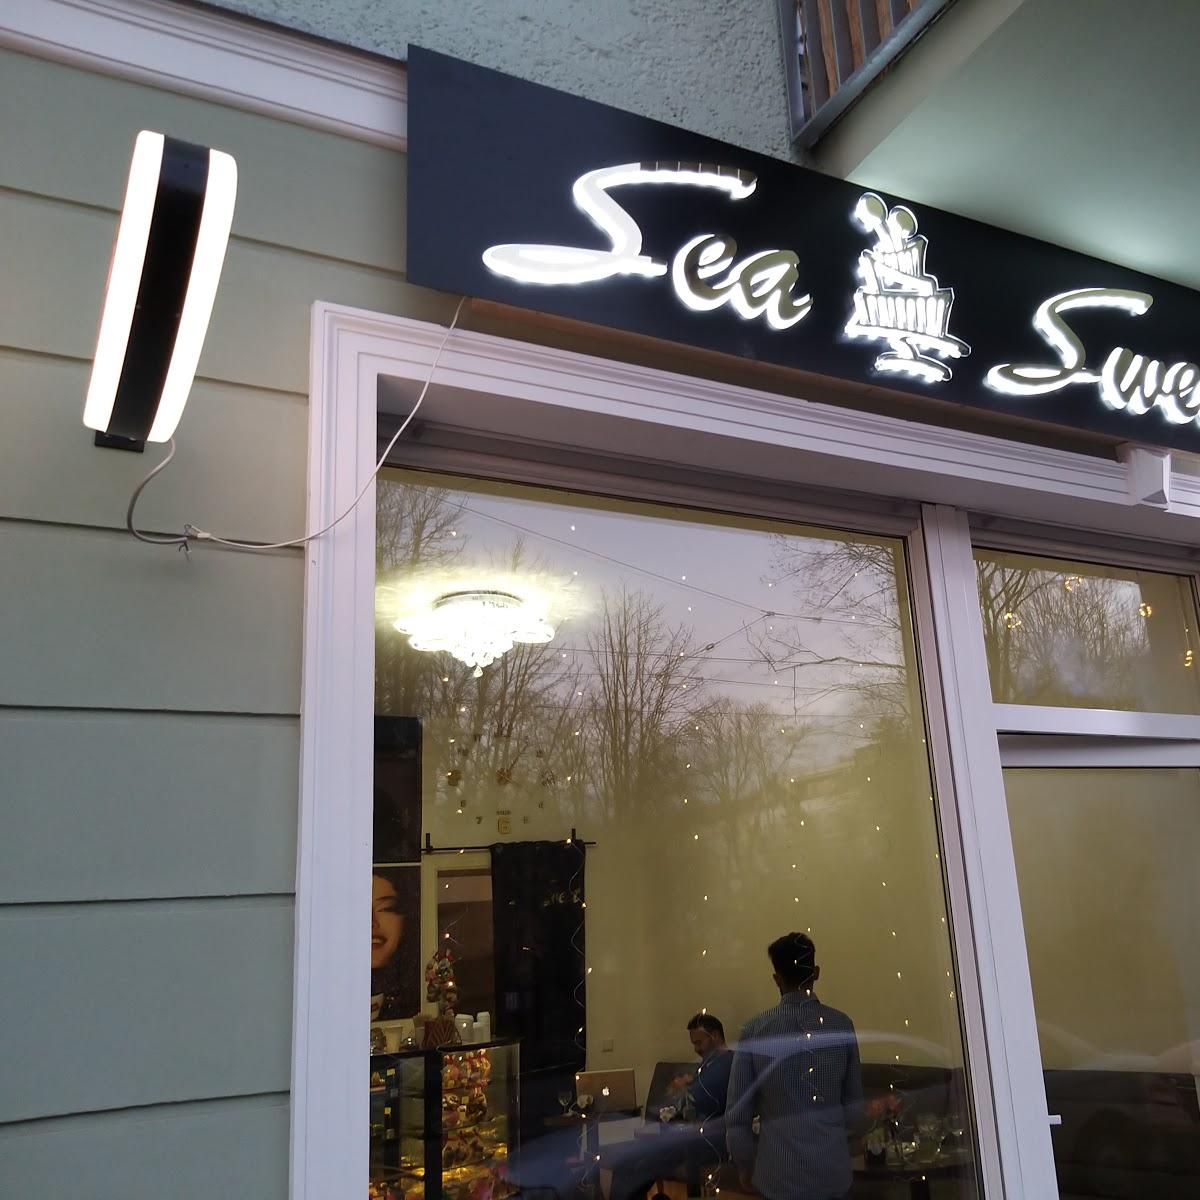 Restaurant "Sea Sweet" in Berlin